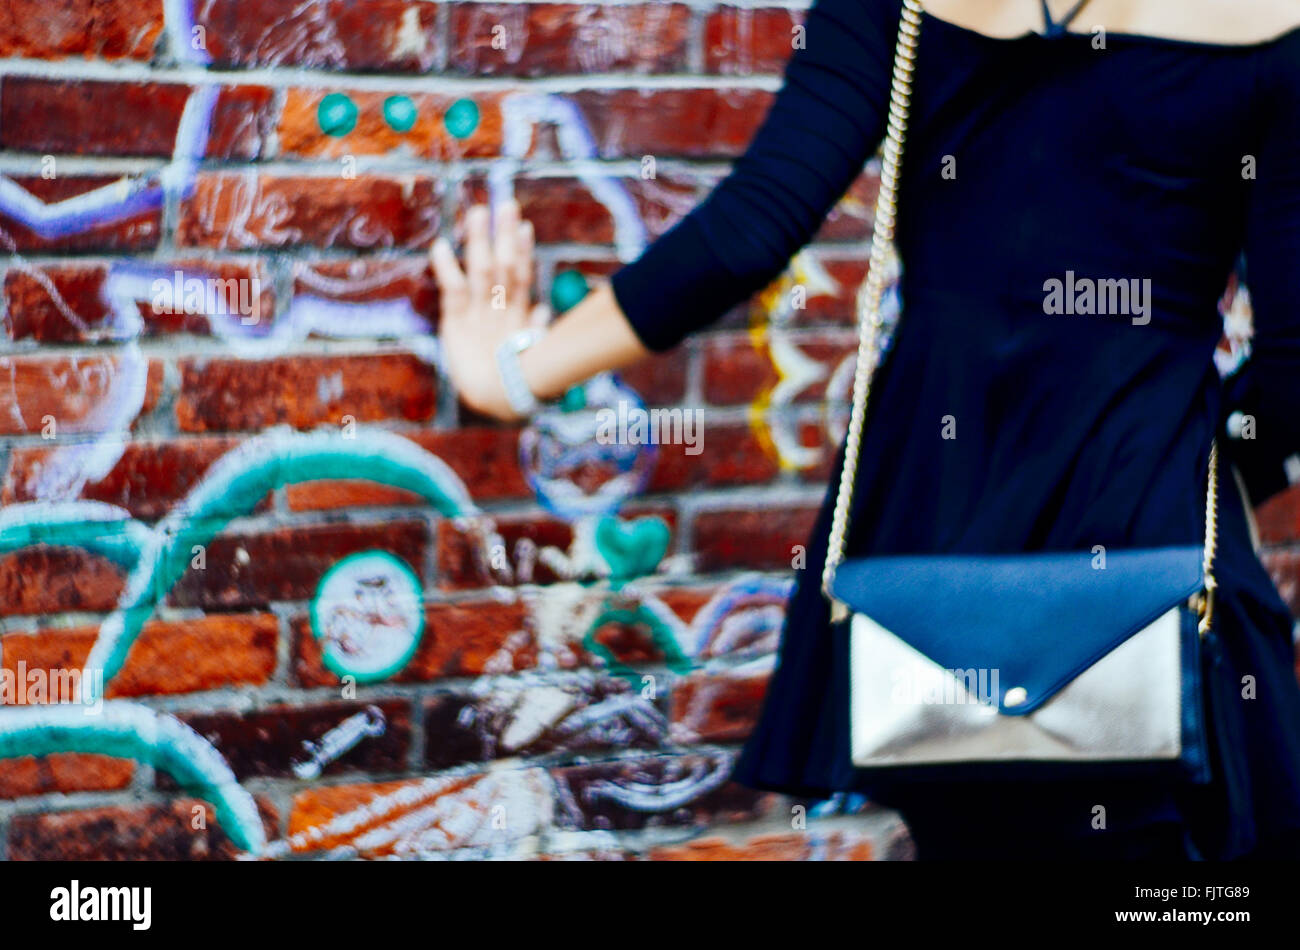 Midsection Of Woman Touching Graffiti Wall Stock Photo